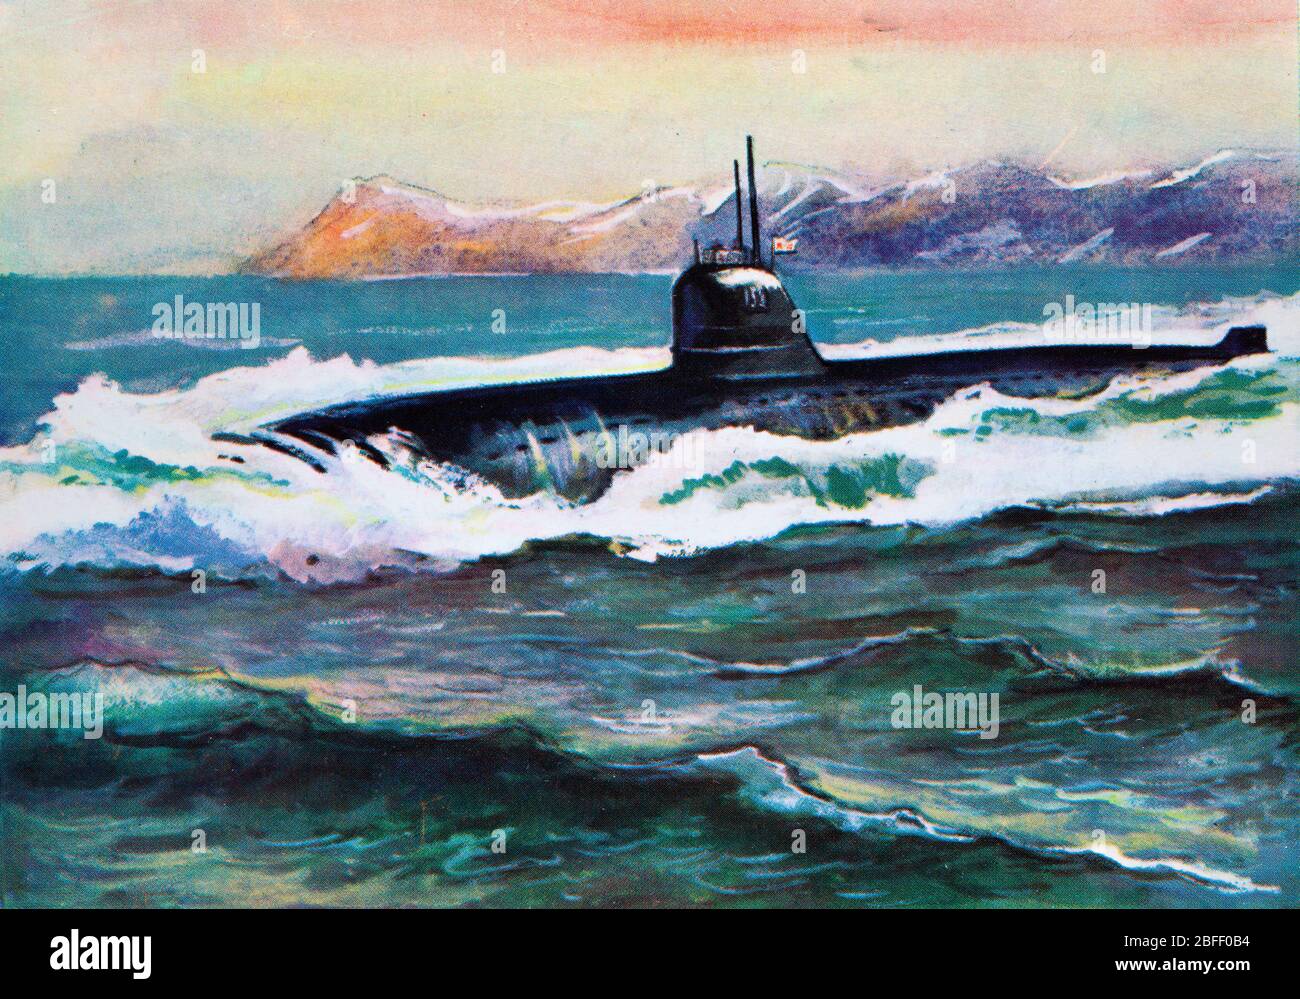 Sous-marin nucléaire soviétique, marine soviétique, années 1970, Russie Banque D'Images